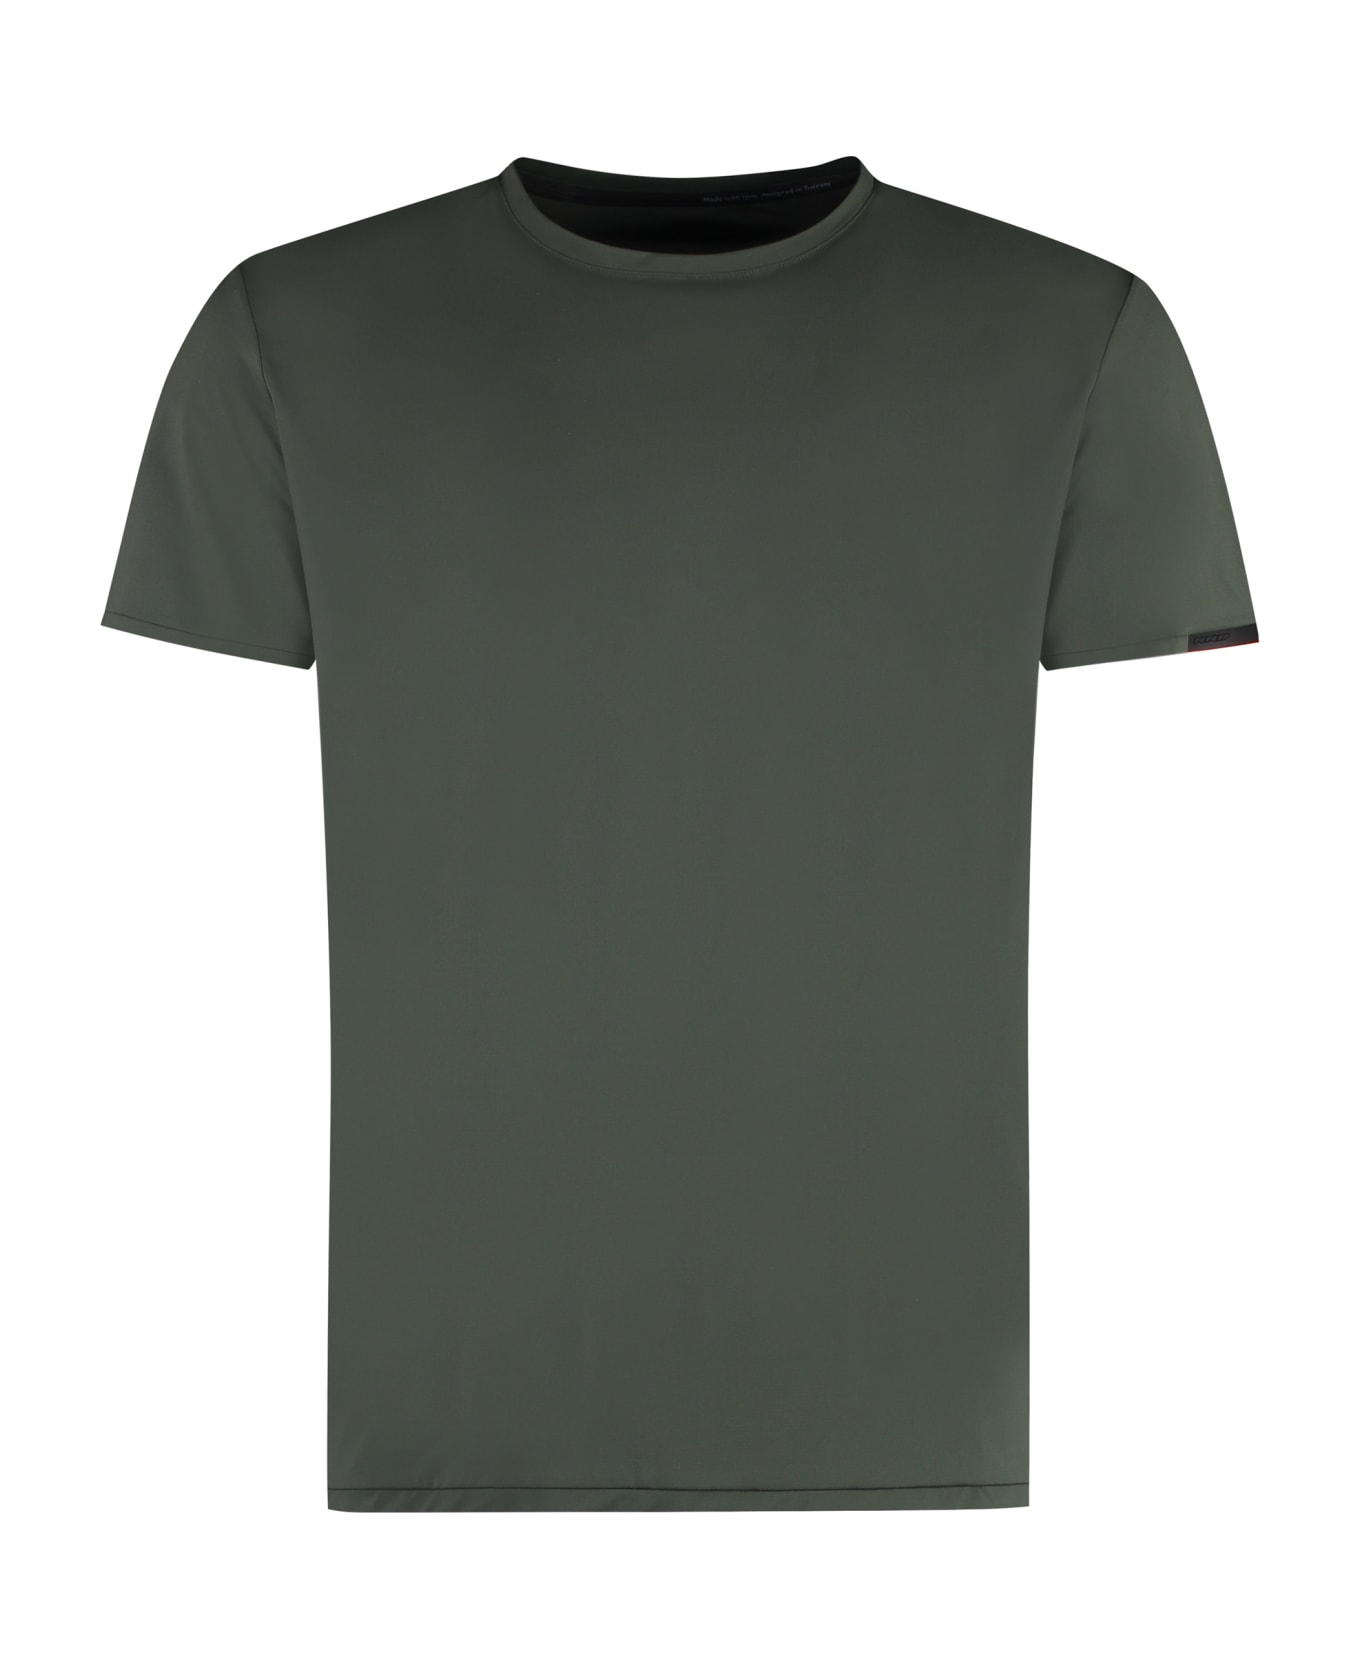 RRD - Roberto Ricci Design Oxford Techno Fabric T-shirt - Green シャツ